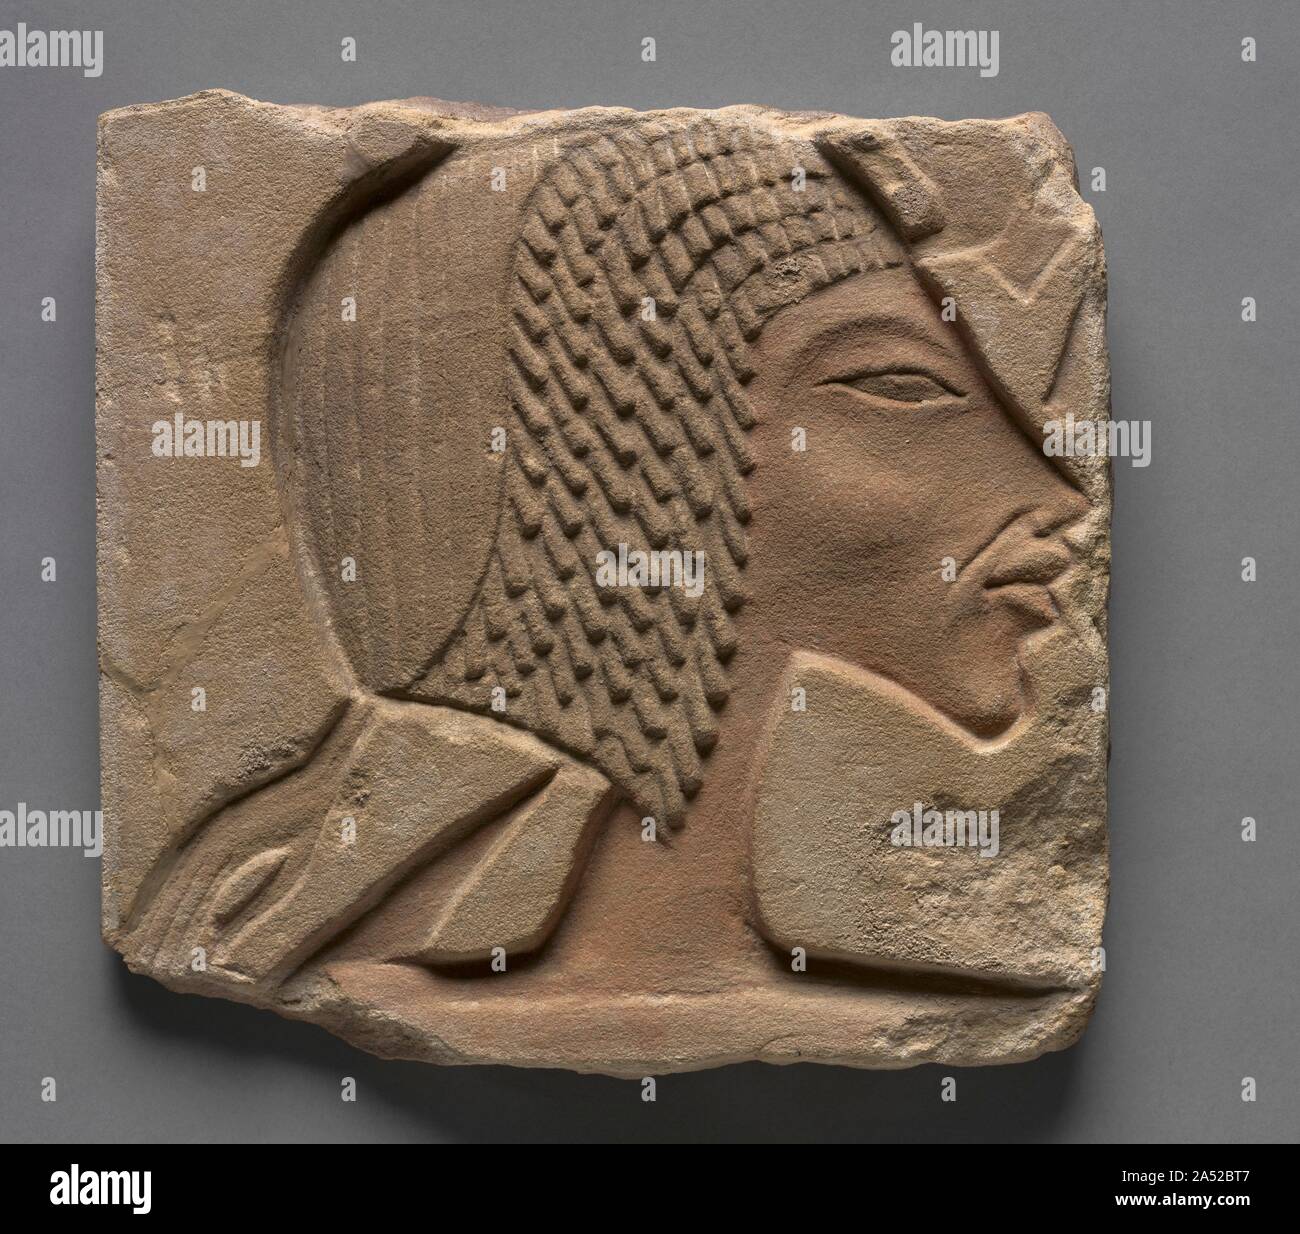 Talatat: Ritratto di Nefertiti, c. 1353-1347 A.C. Il figlio di Amenhotep III, Akenhaten, portato circa la vita breve "monoteista" rivoluzione nella religione egiziana in prossimità della fine della dinastia 18. Il giovane re costruito un tempio complesso di Aton, Sun Disk, a Karnak&#x2014;dal quale questi rilievi venire&#x2014;prima vi trasferì la sua capitale a el Amarna. Per ragioni ancora sconosciute, la figura della regina Nefertiti appare in questi rilievi molto più spesso che quella del re. Per ironia della sorte, templi Aten sono state smantellate per essere utilizzati come fondazioni e riempire di aggiunte al grande Tem Foto Stock